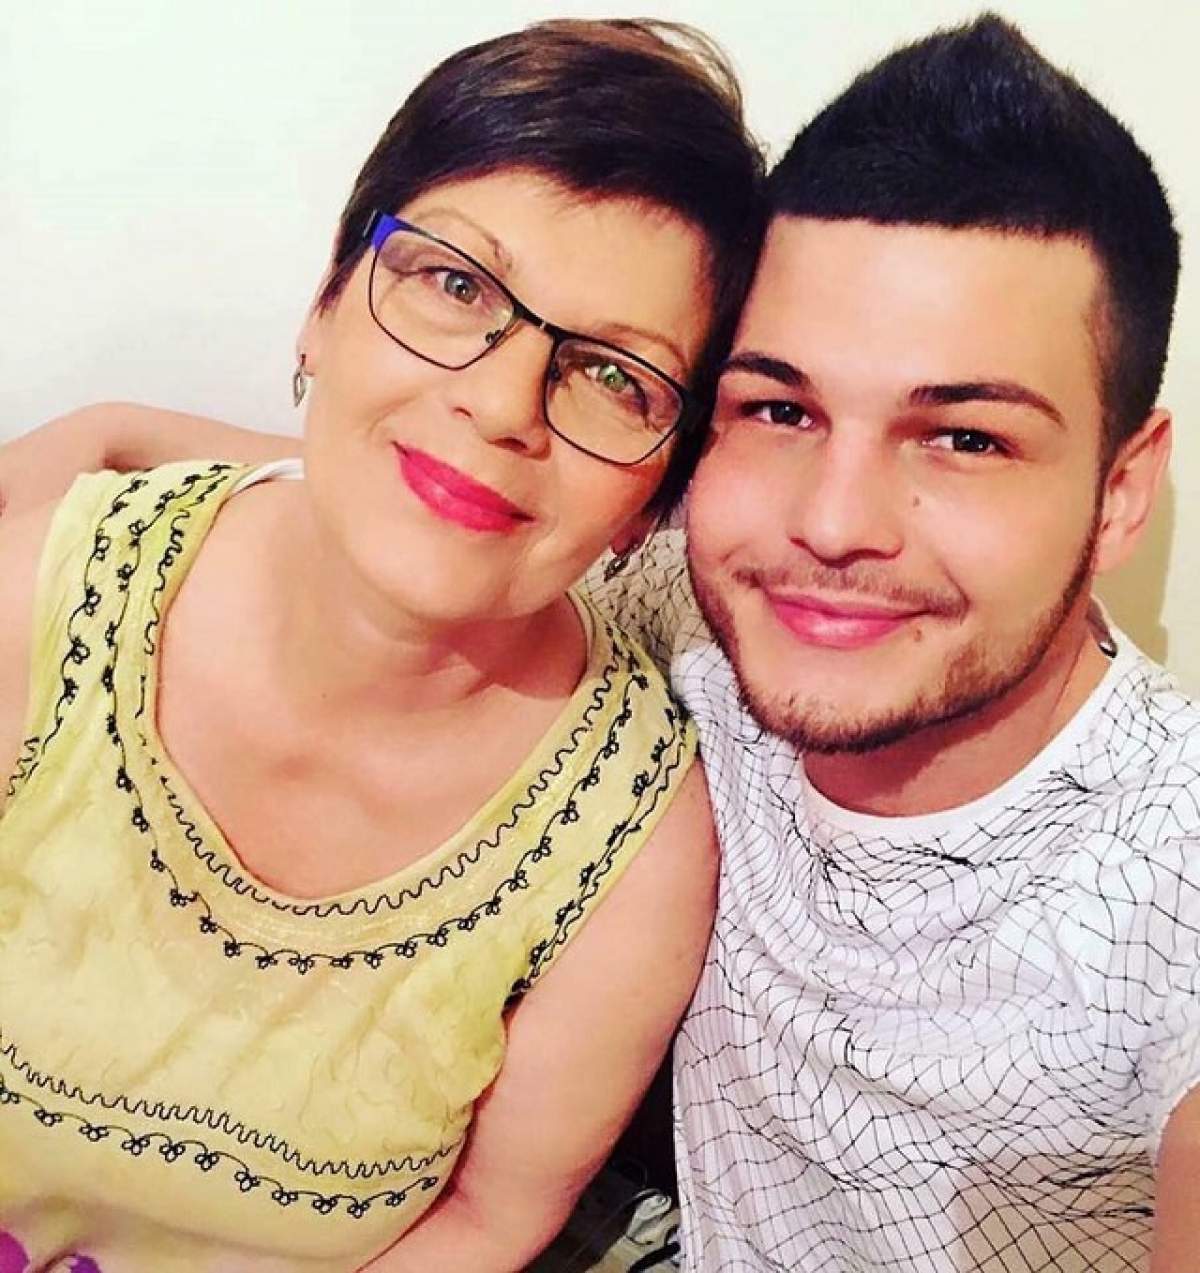 VIDEO / Surpriză mare! Răzvan Botezatu a luat avionul și a mers în Germania la mama lui, fără să o anunțe. Reacția ei când l-a văzut